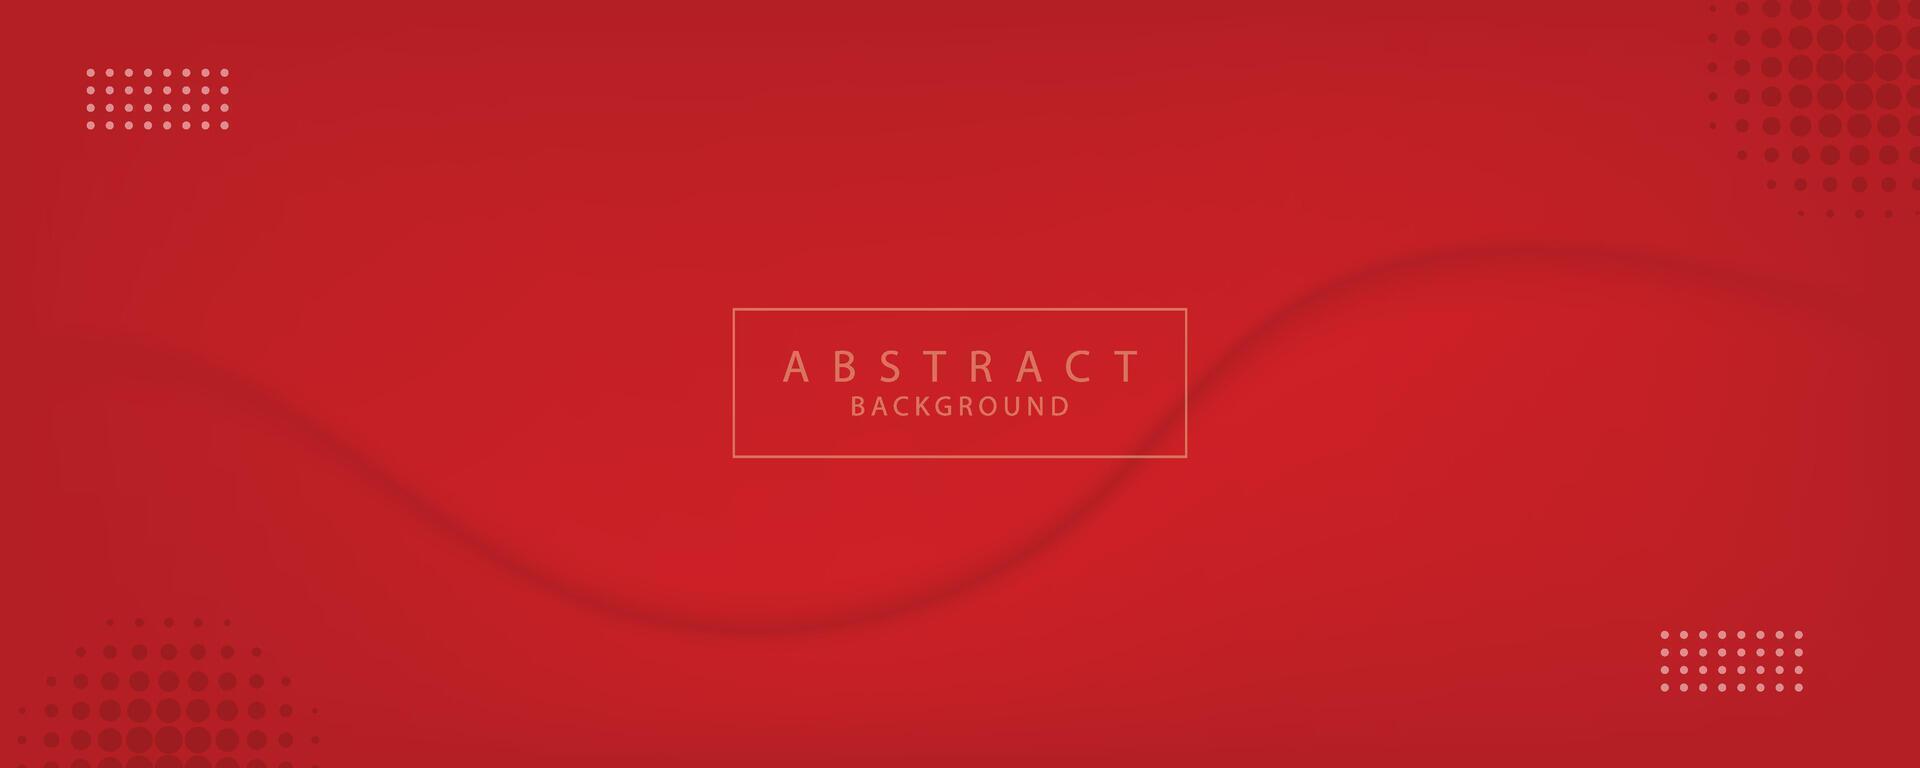 vecteur abstrait rouge pente bannière avec dynamique rouge vagues, lignes et particules.